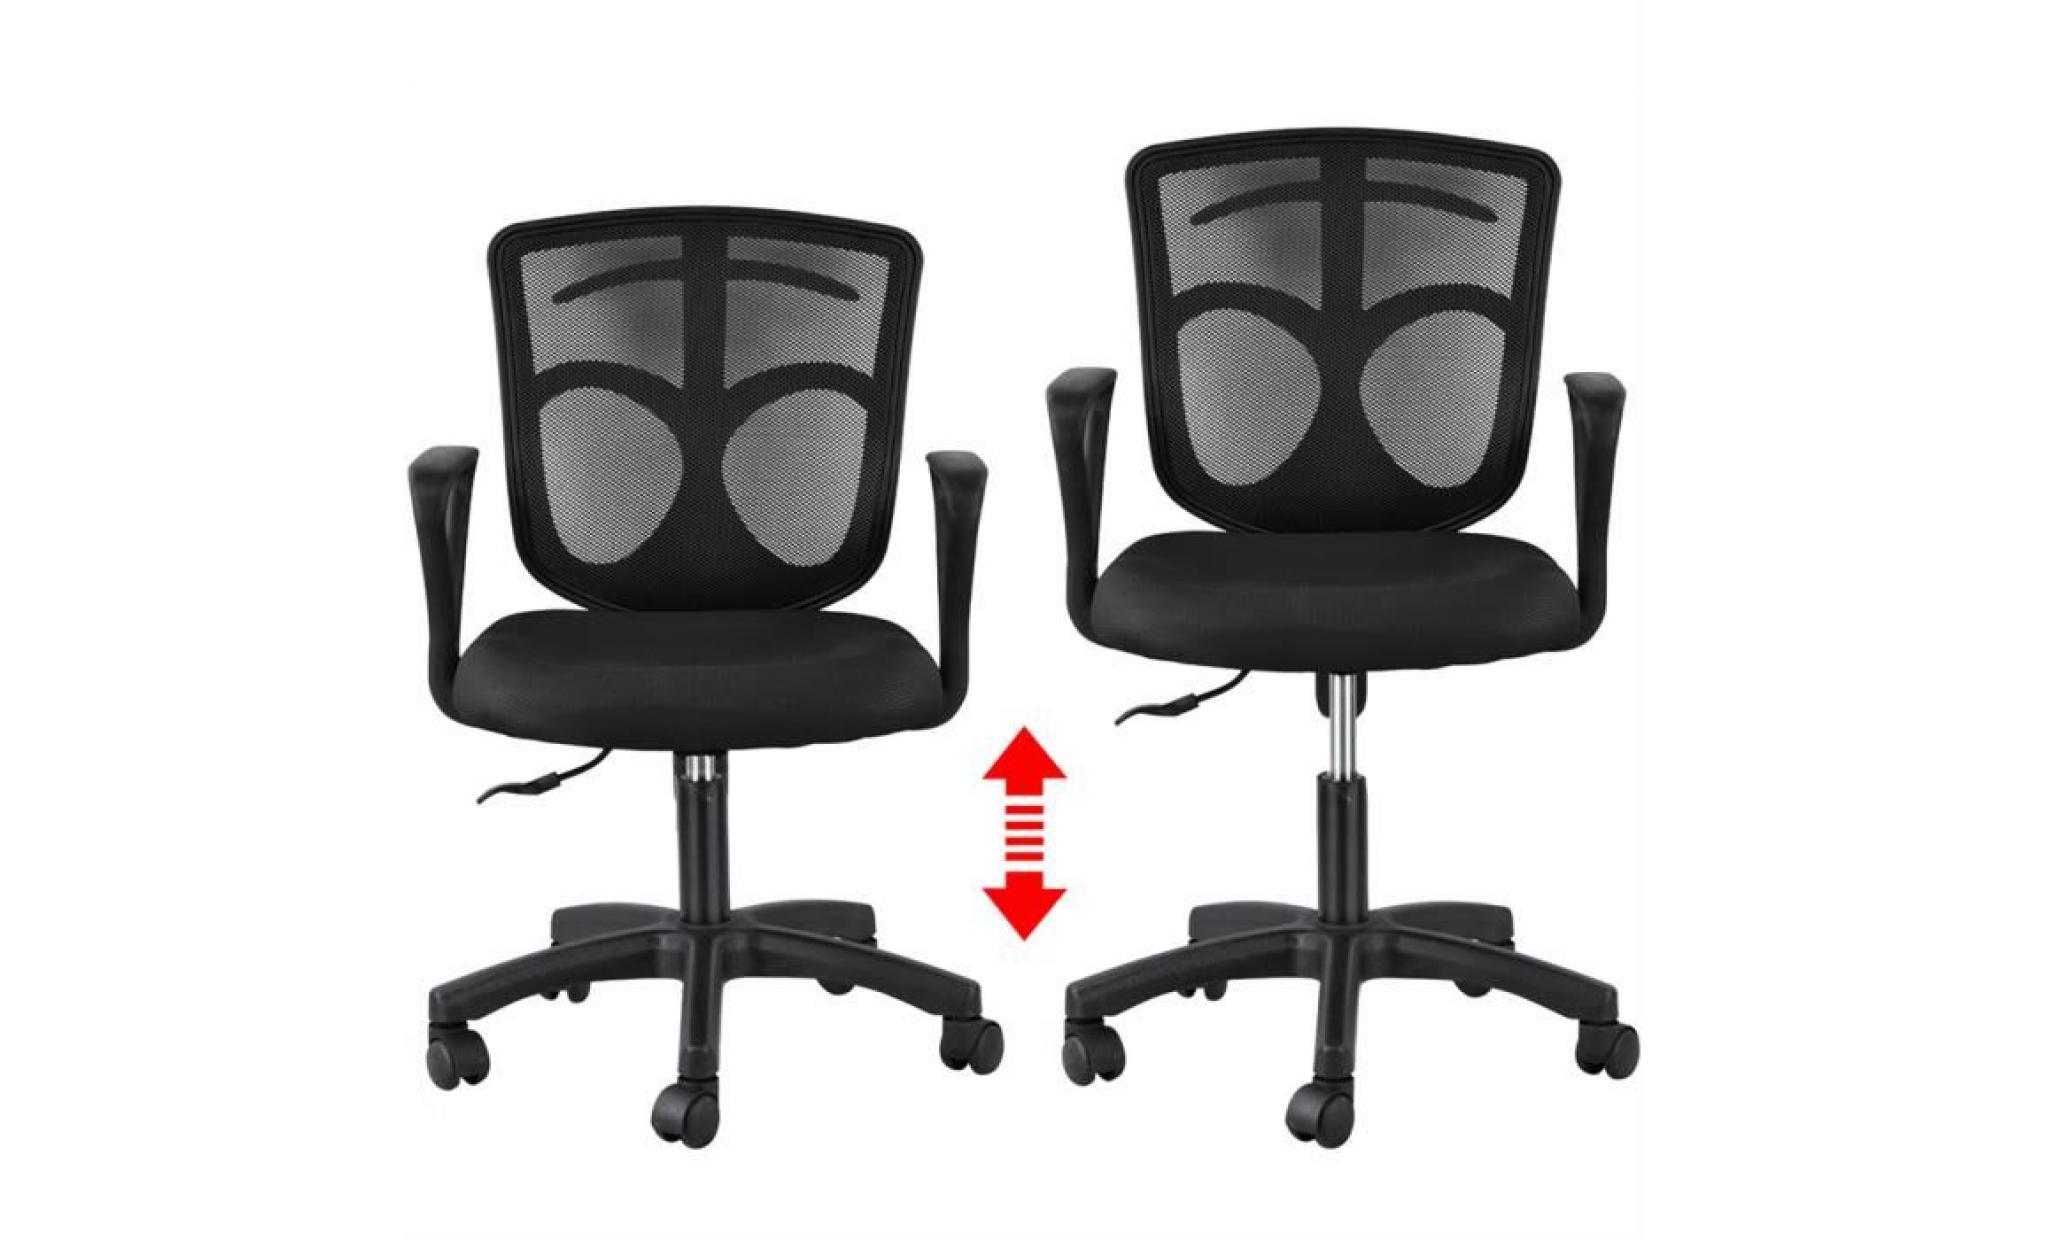 yaheetech chaise fauteuil de bureau pivotant hauteur réglable avec crochet pour vêtement sac accoudoirs chaise inclinable dossier pas cher